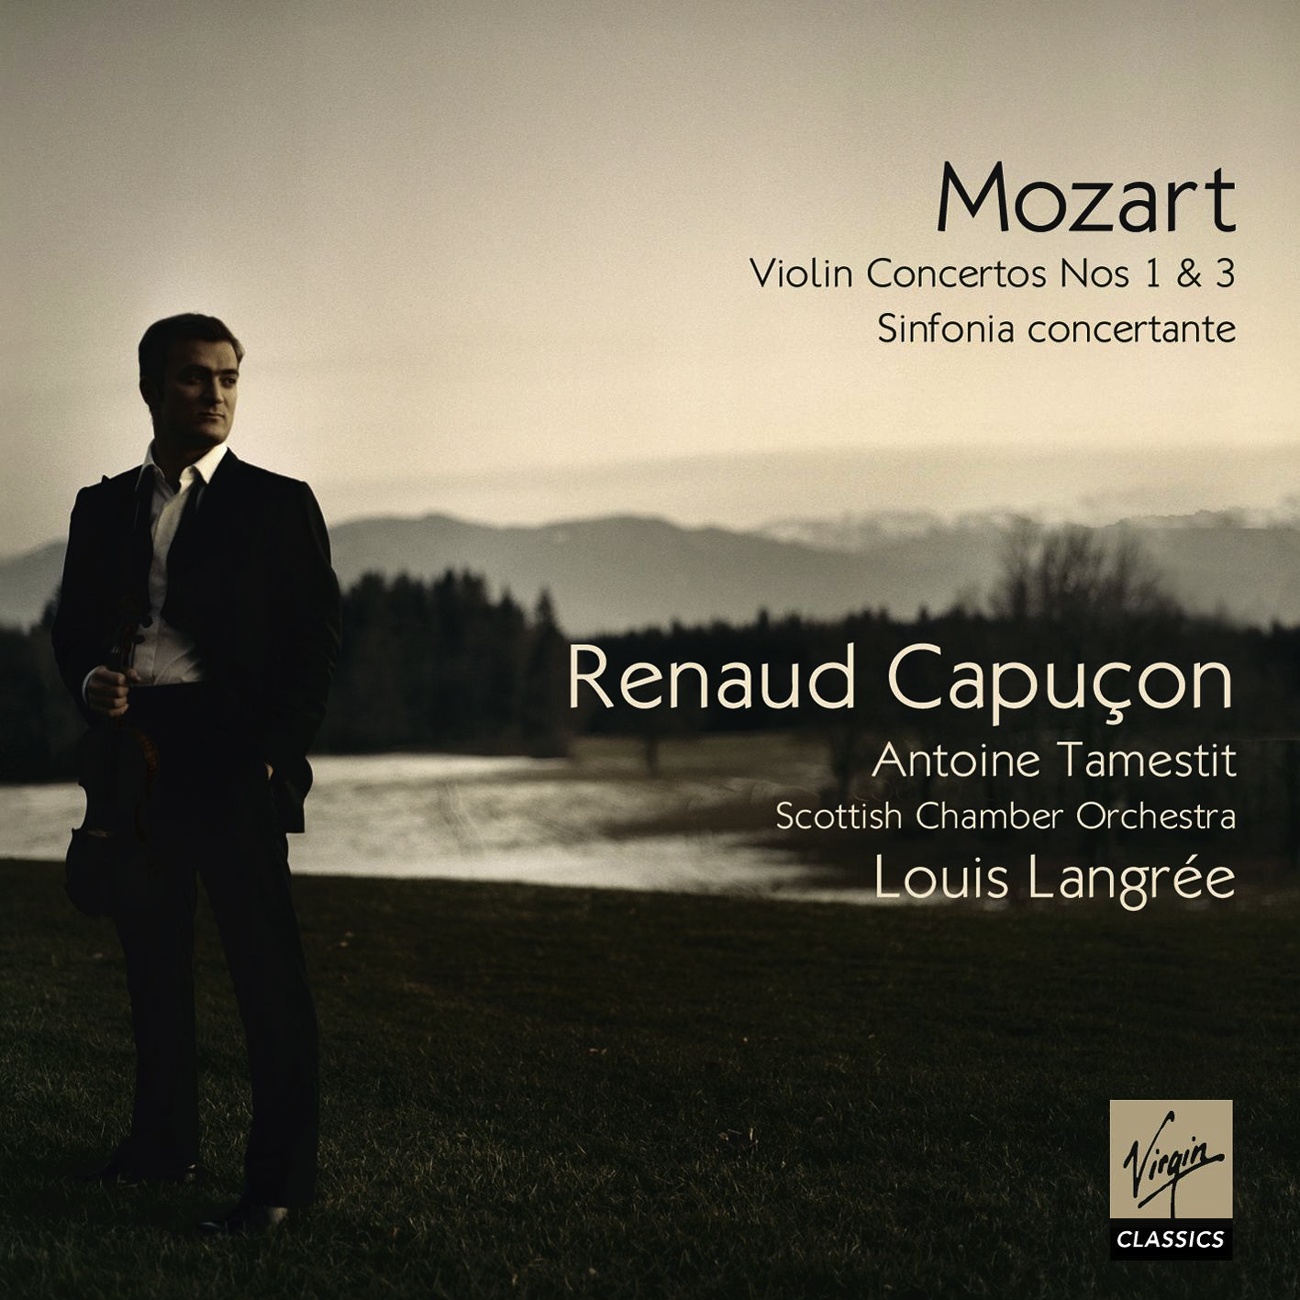 Violin Concerto No.3 K.206 in G major: III. Rondeau. Allegro